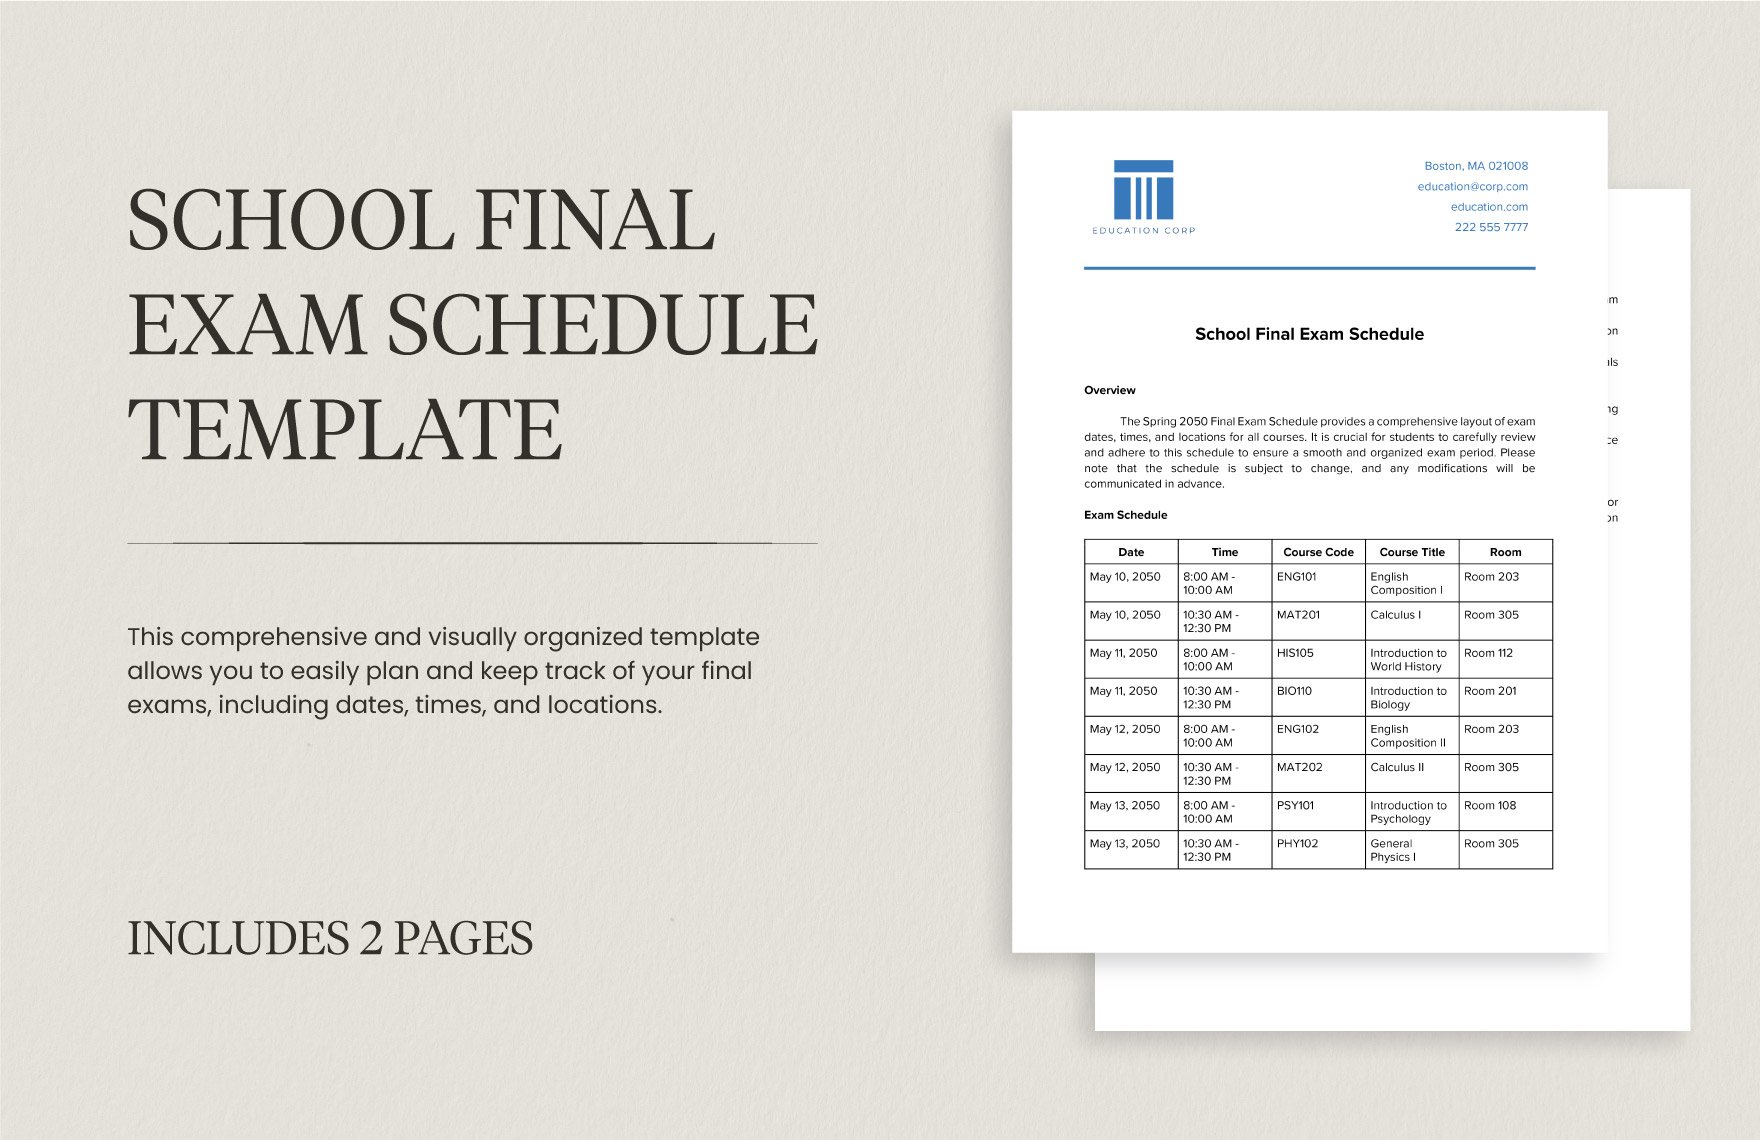 School Final Exam Schedule Template